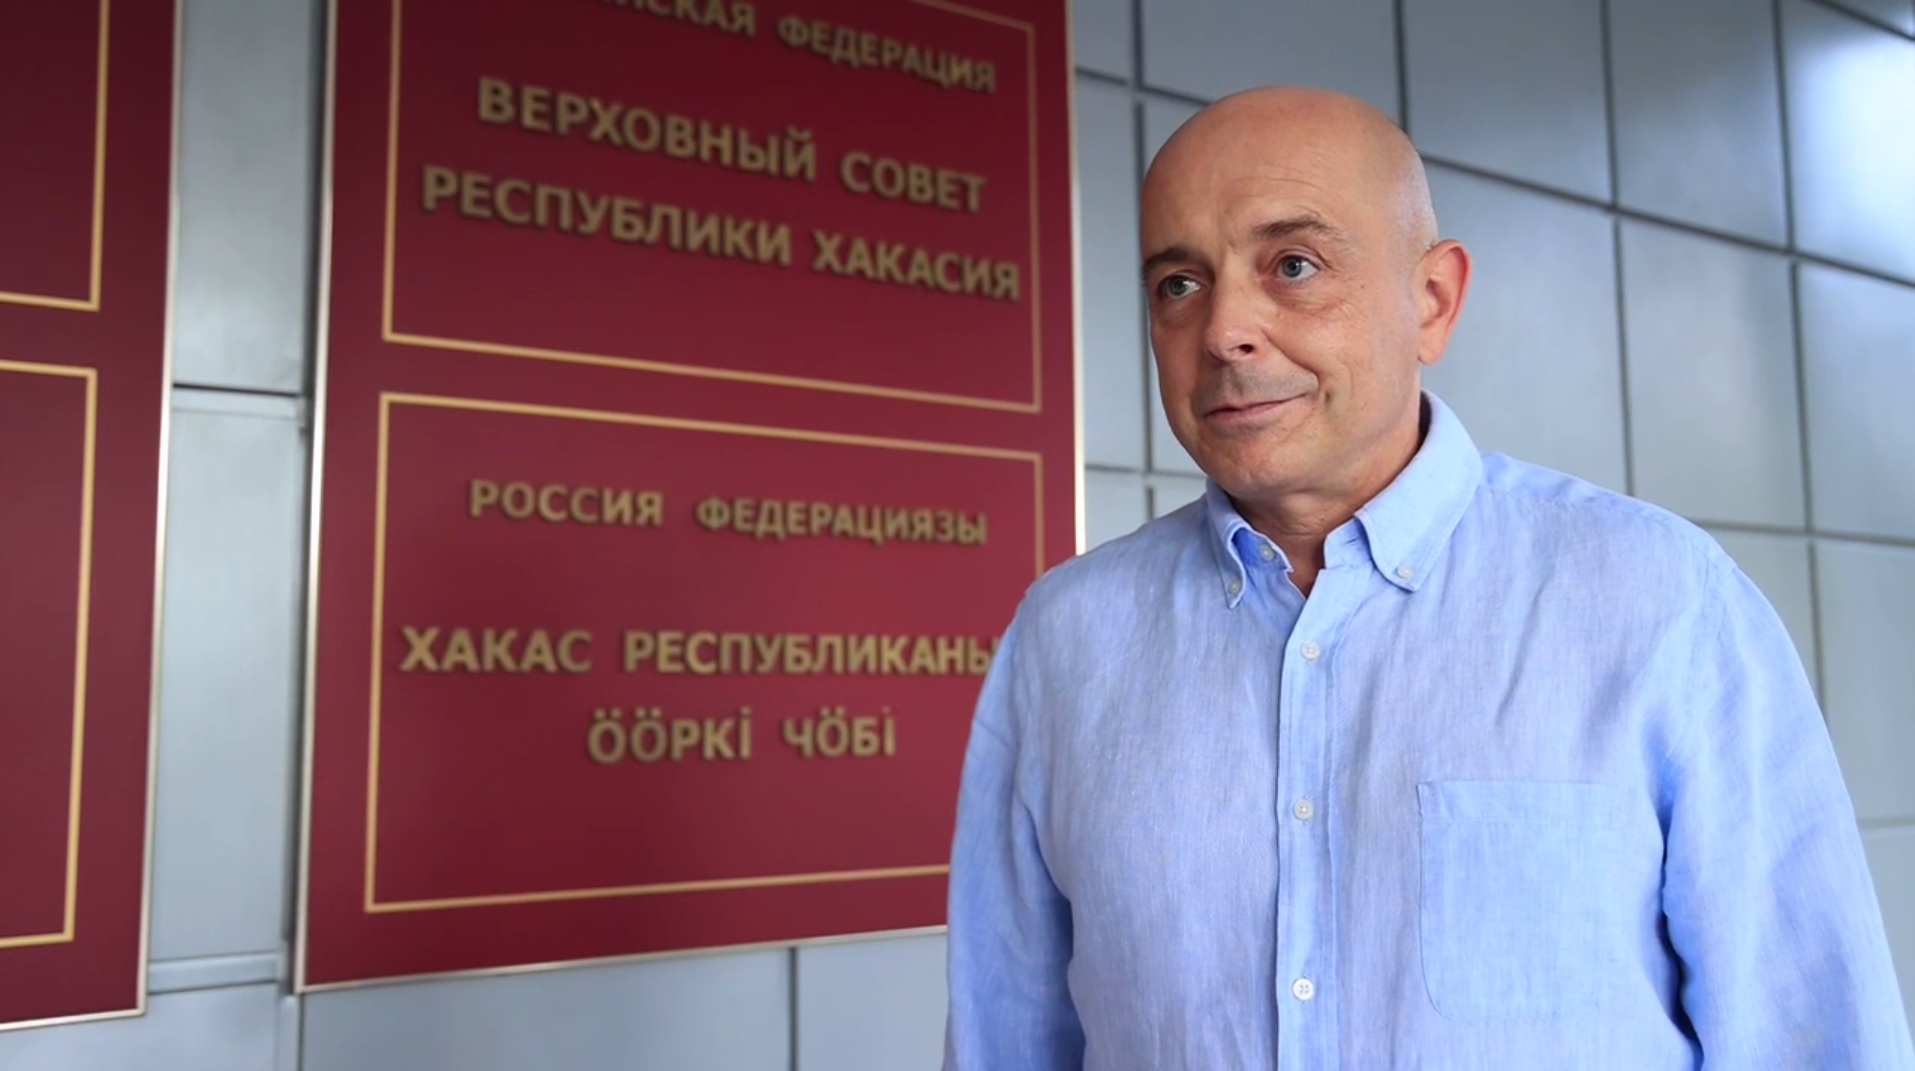 Сергей Сокол, Верховный Совет